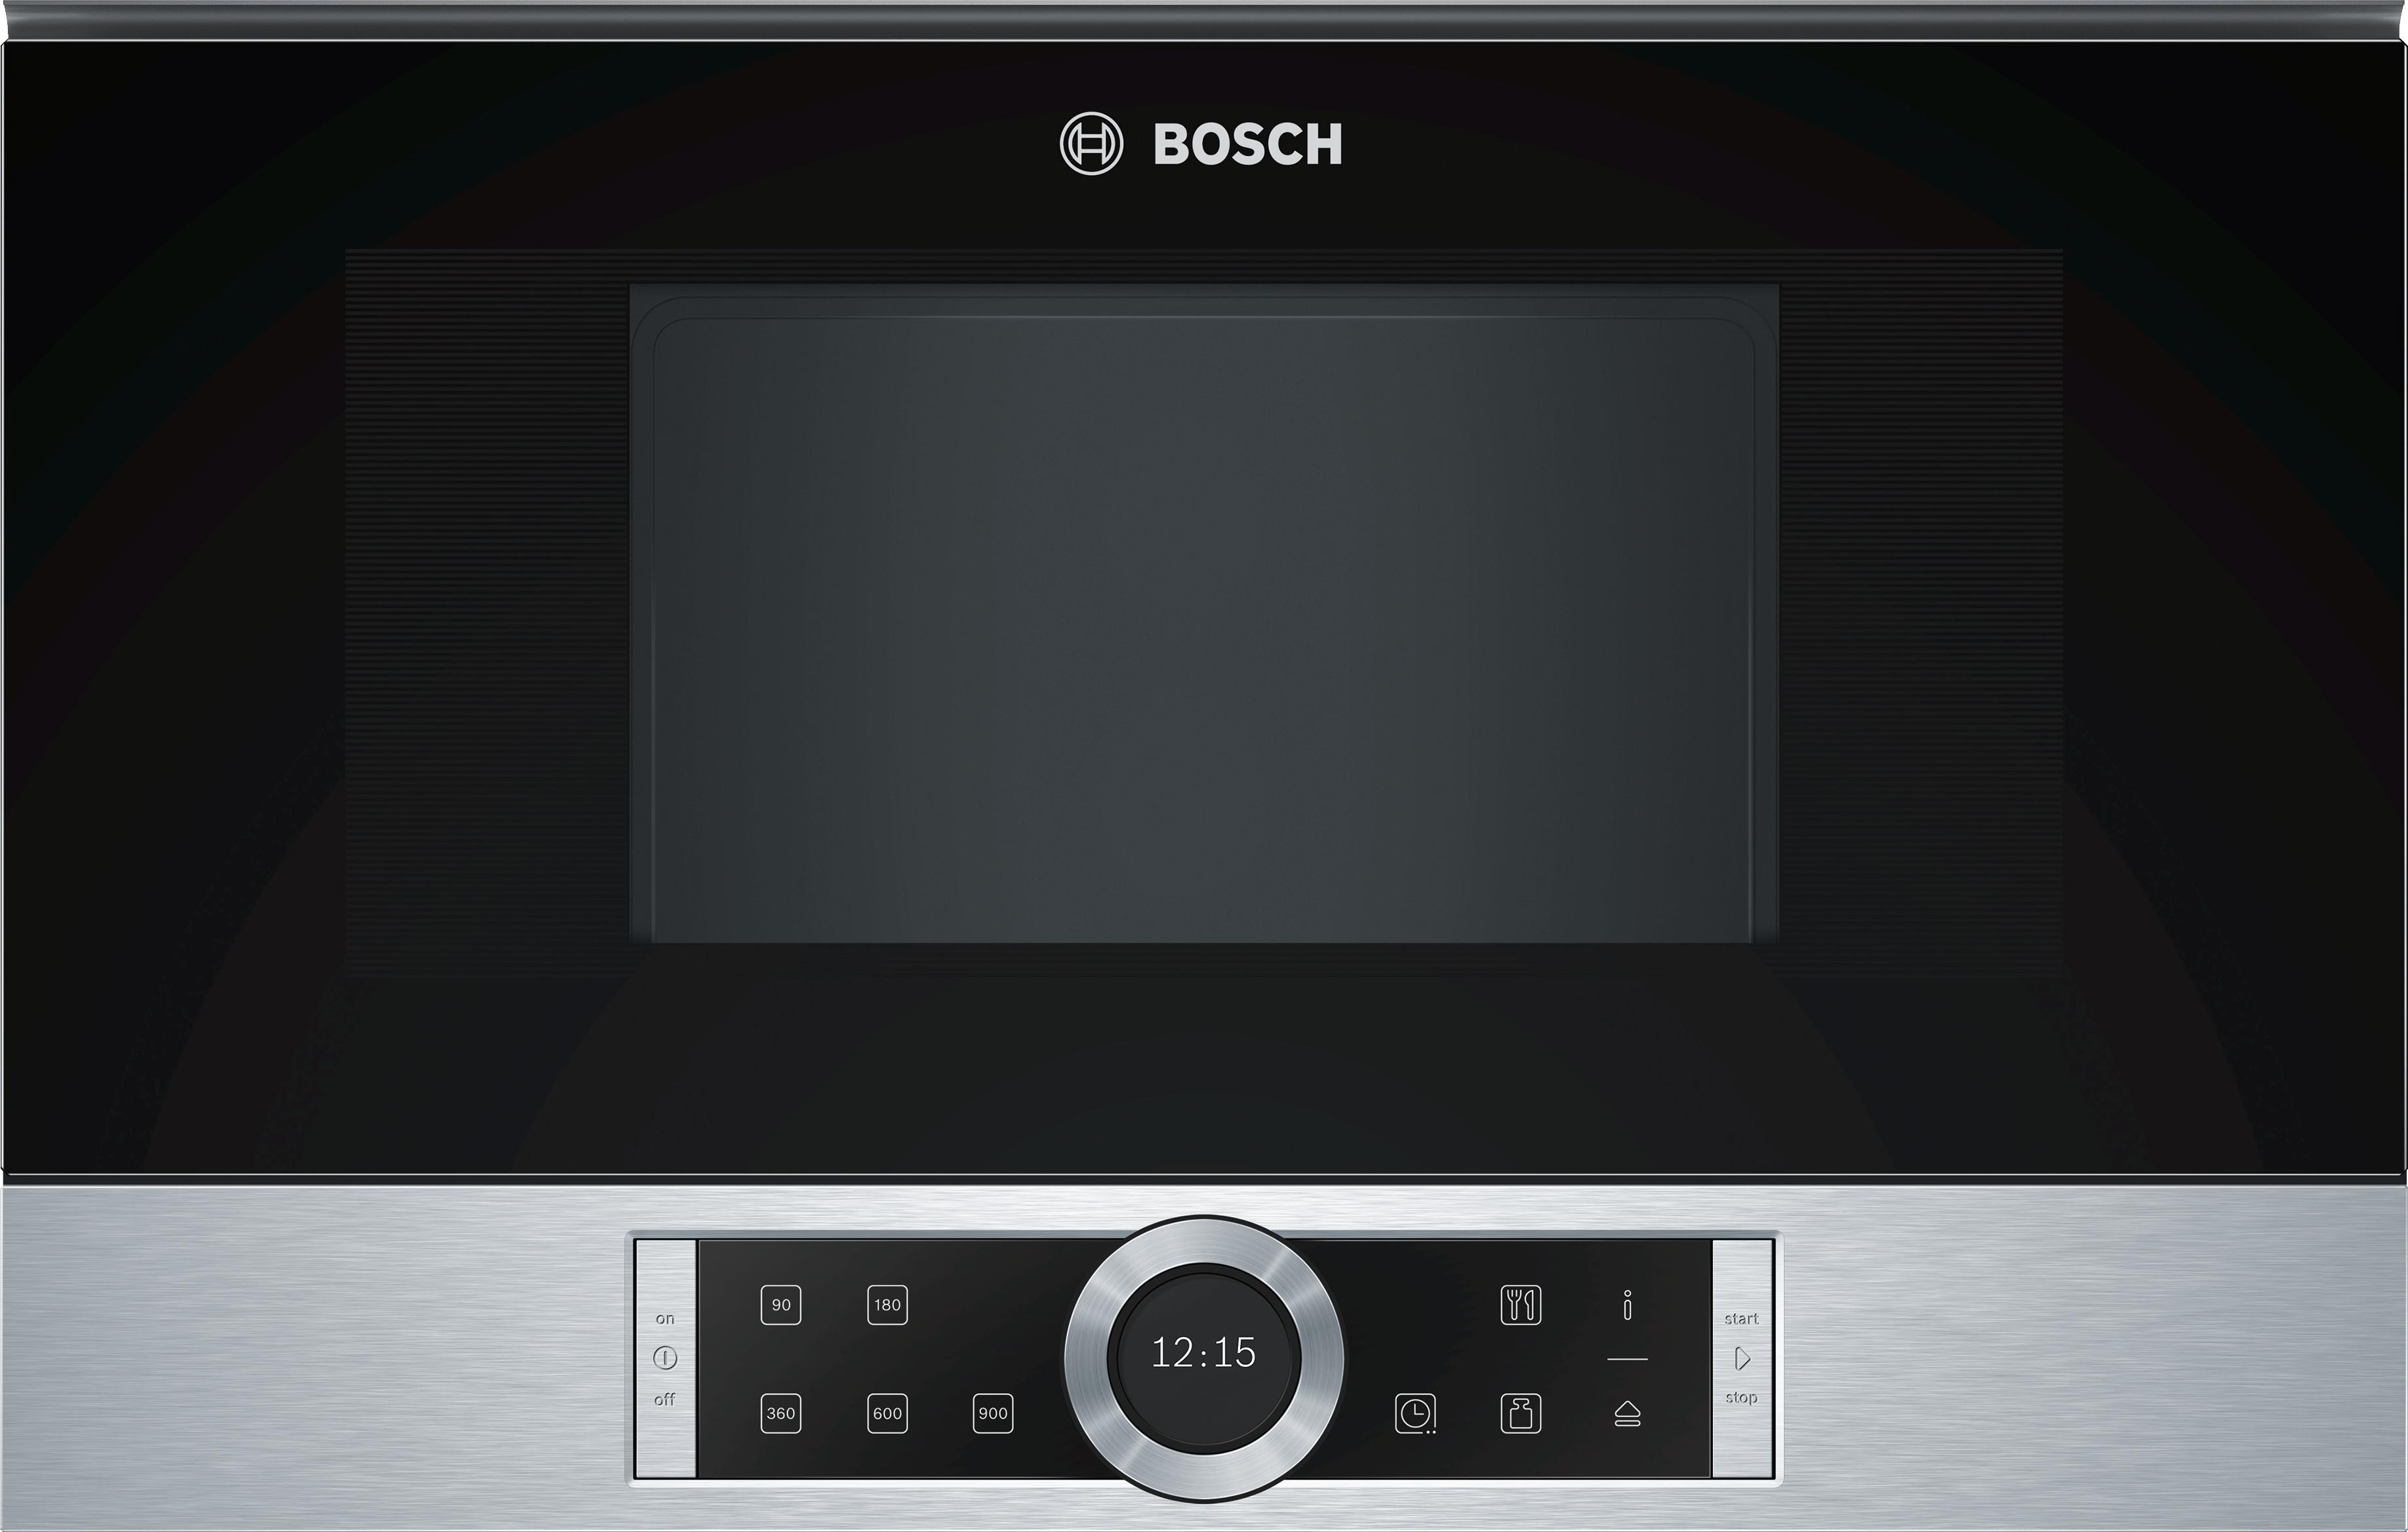 Встроенная микроволновая печь bosch черная. Bosch bel634gs1. Микроволновая печь встраиваемая Bosch bfl634gb1. Микроволновая печь встраиваемая Bosch bfr634gs1. Встраиваемая микроволновая печь СВЧ Bosch bfl634gs1.